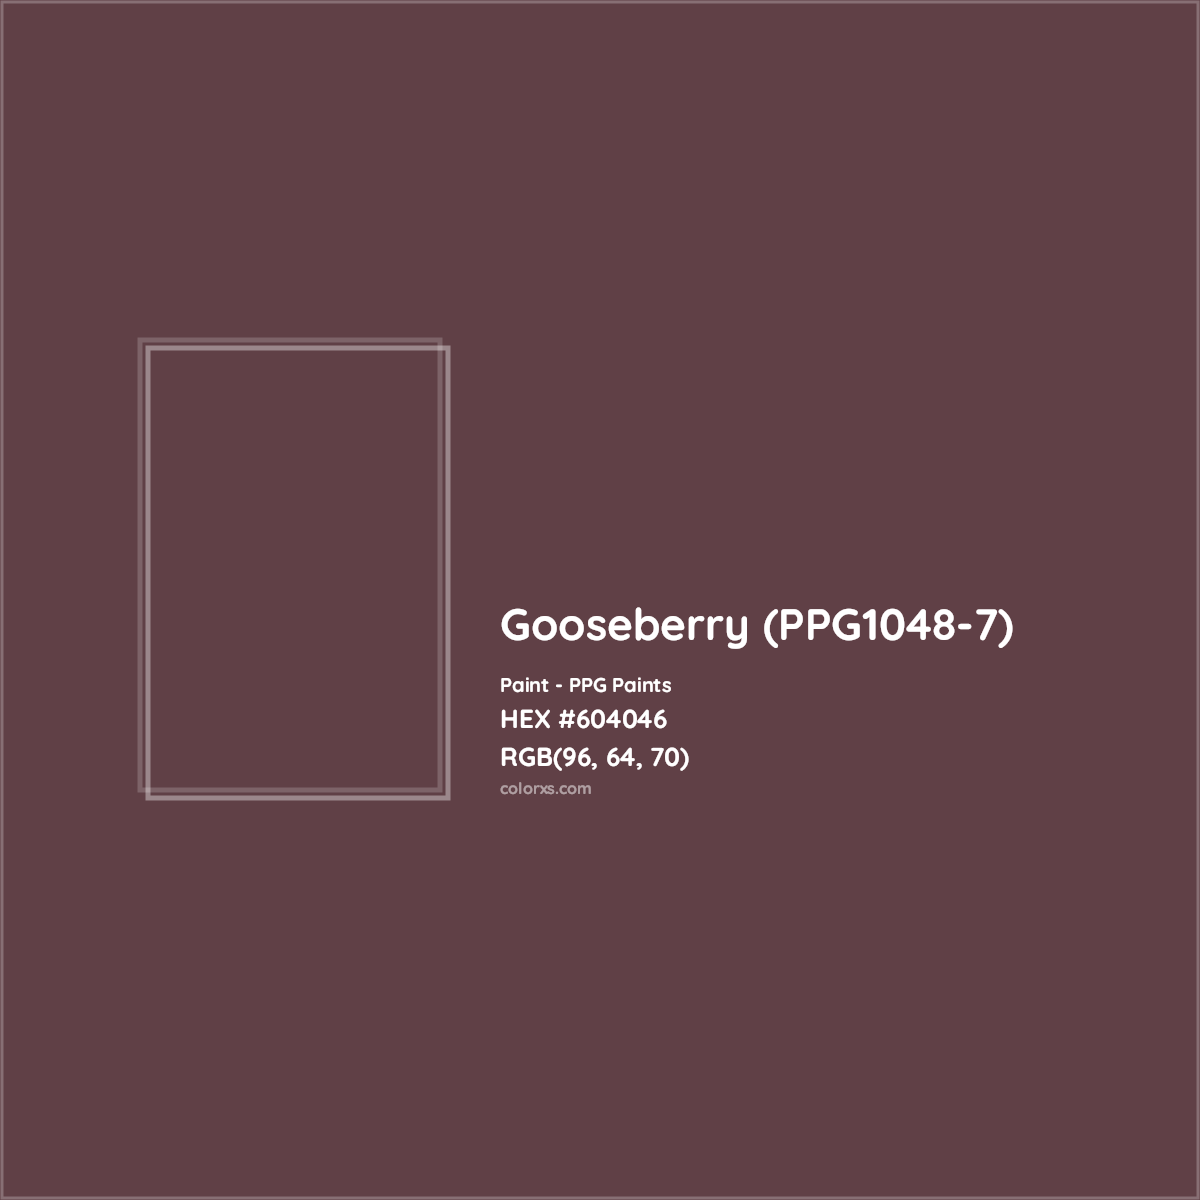 HEX #604046 Gooseberry (PPG1048-7) Paint PPG Paints - Color Code